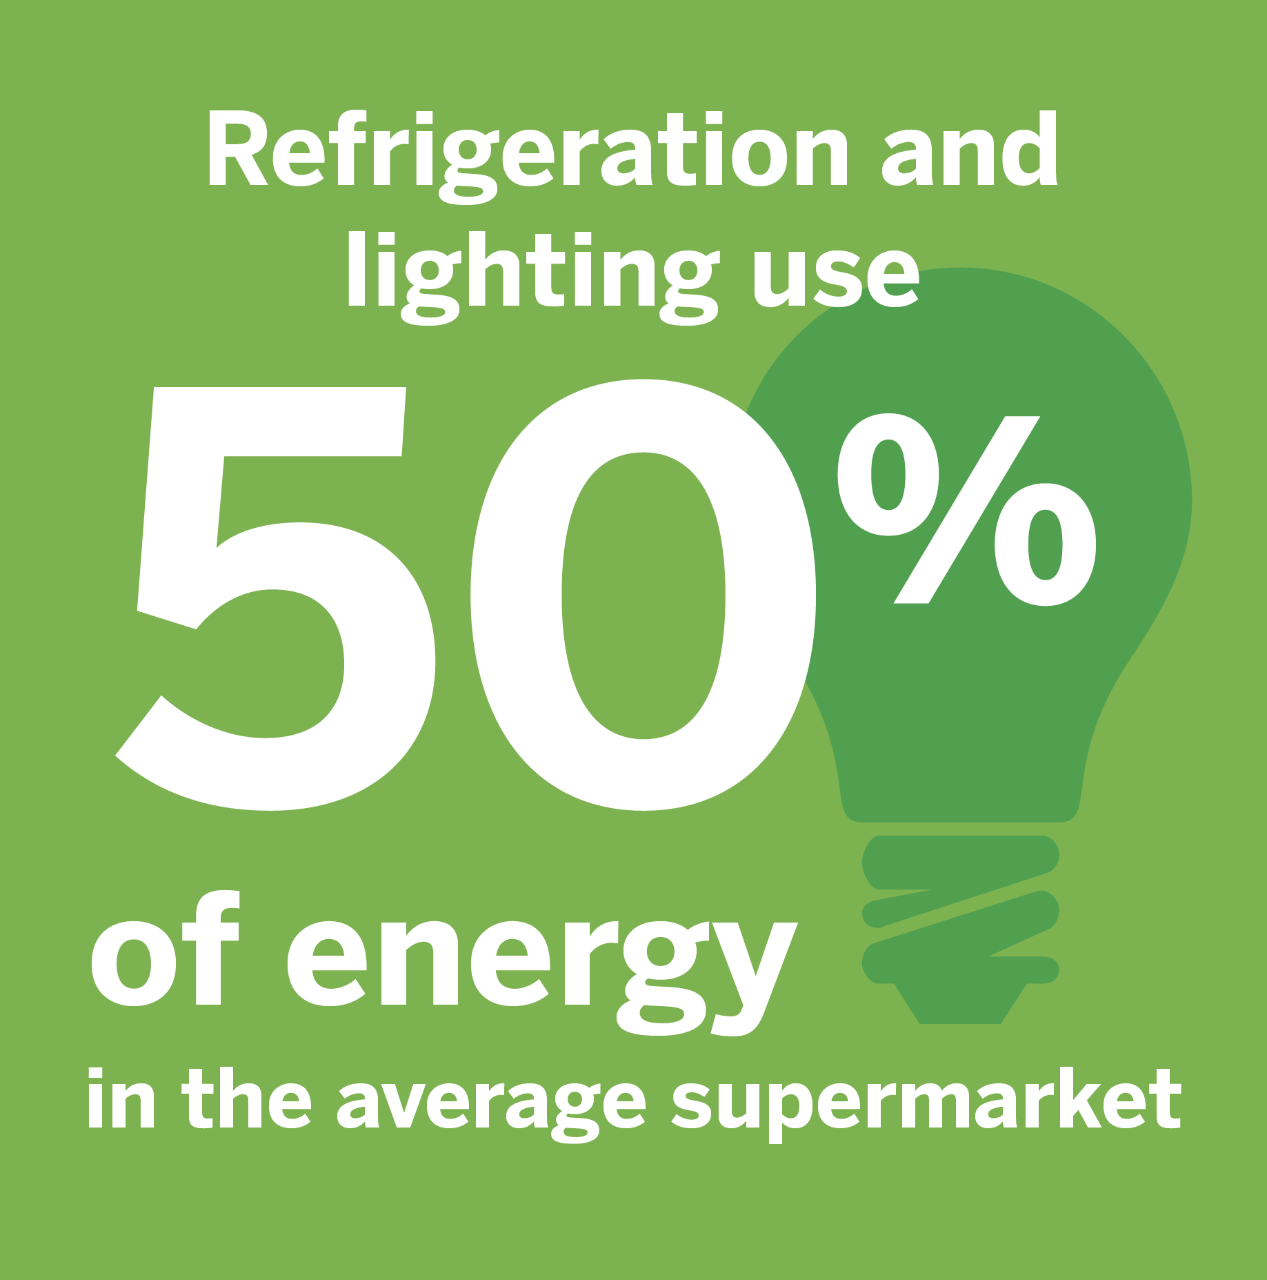 Supermarket energy usage.